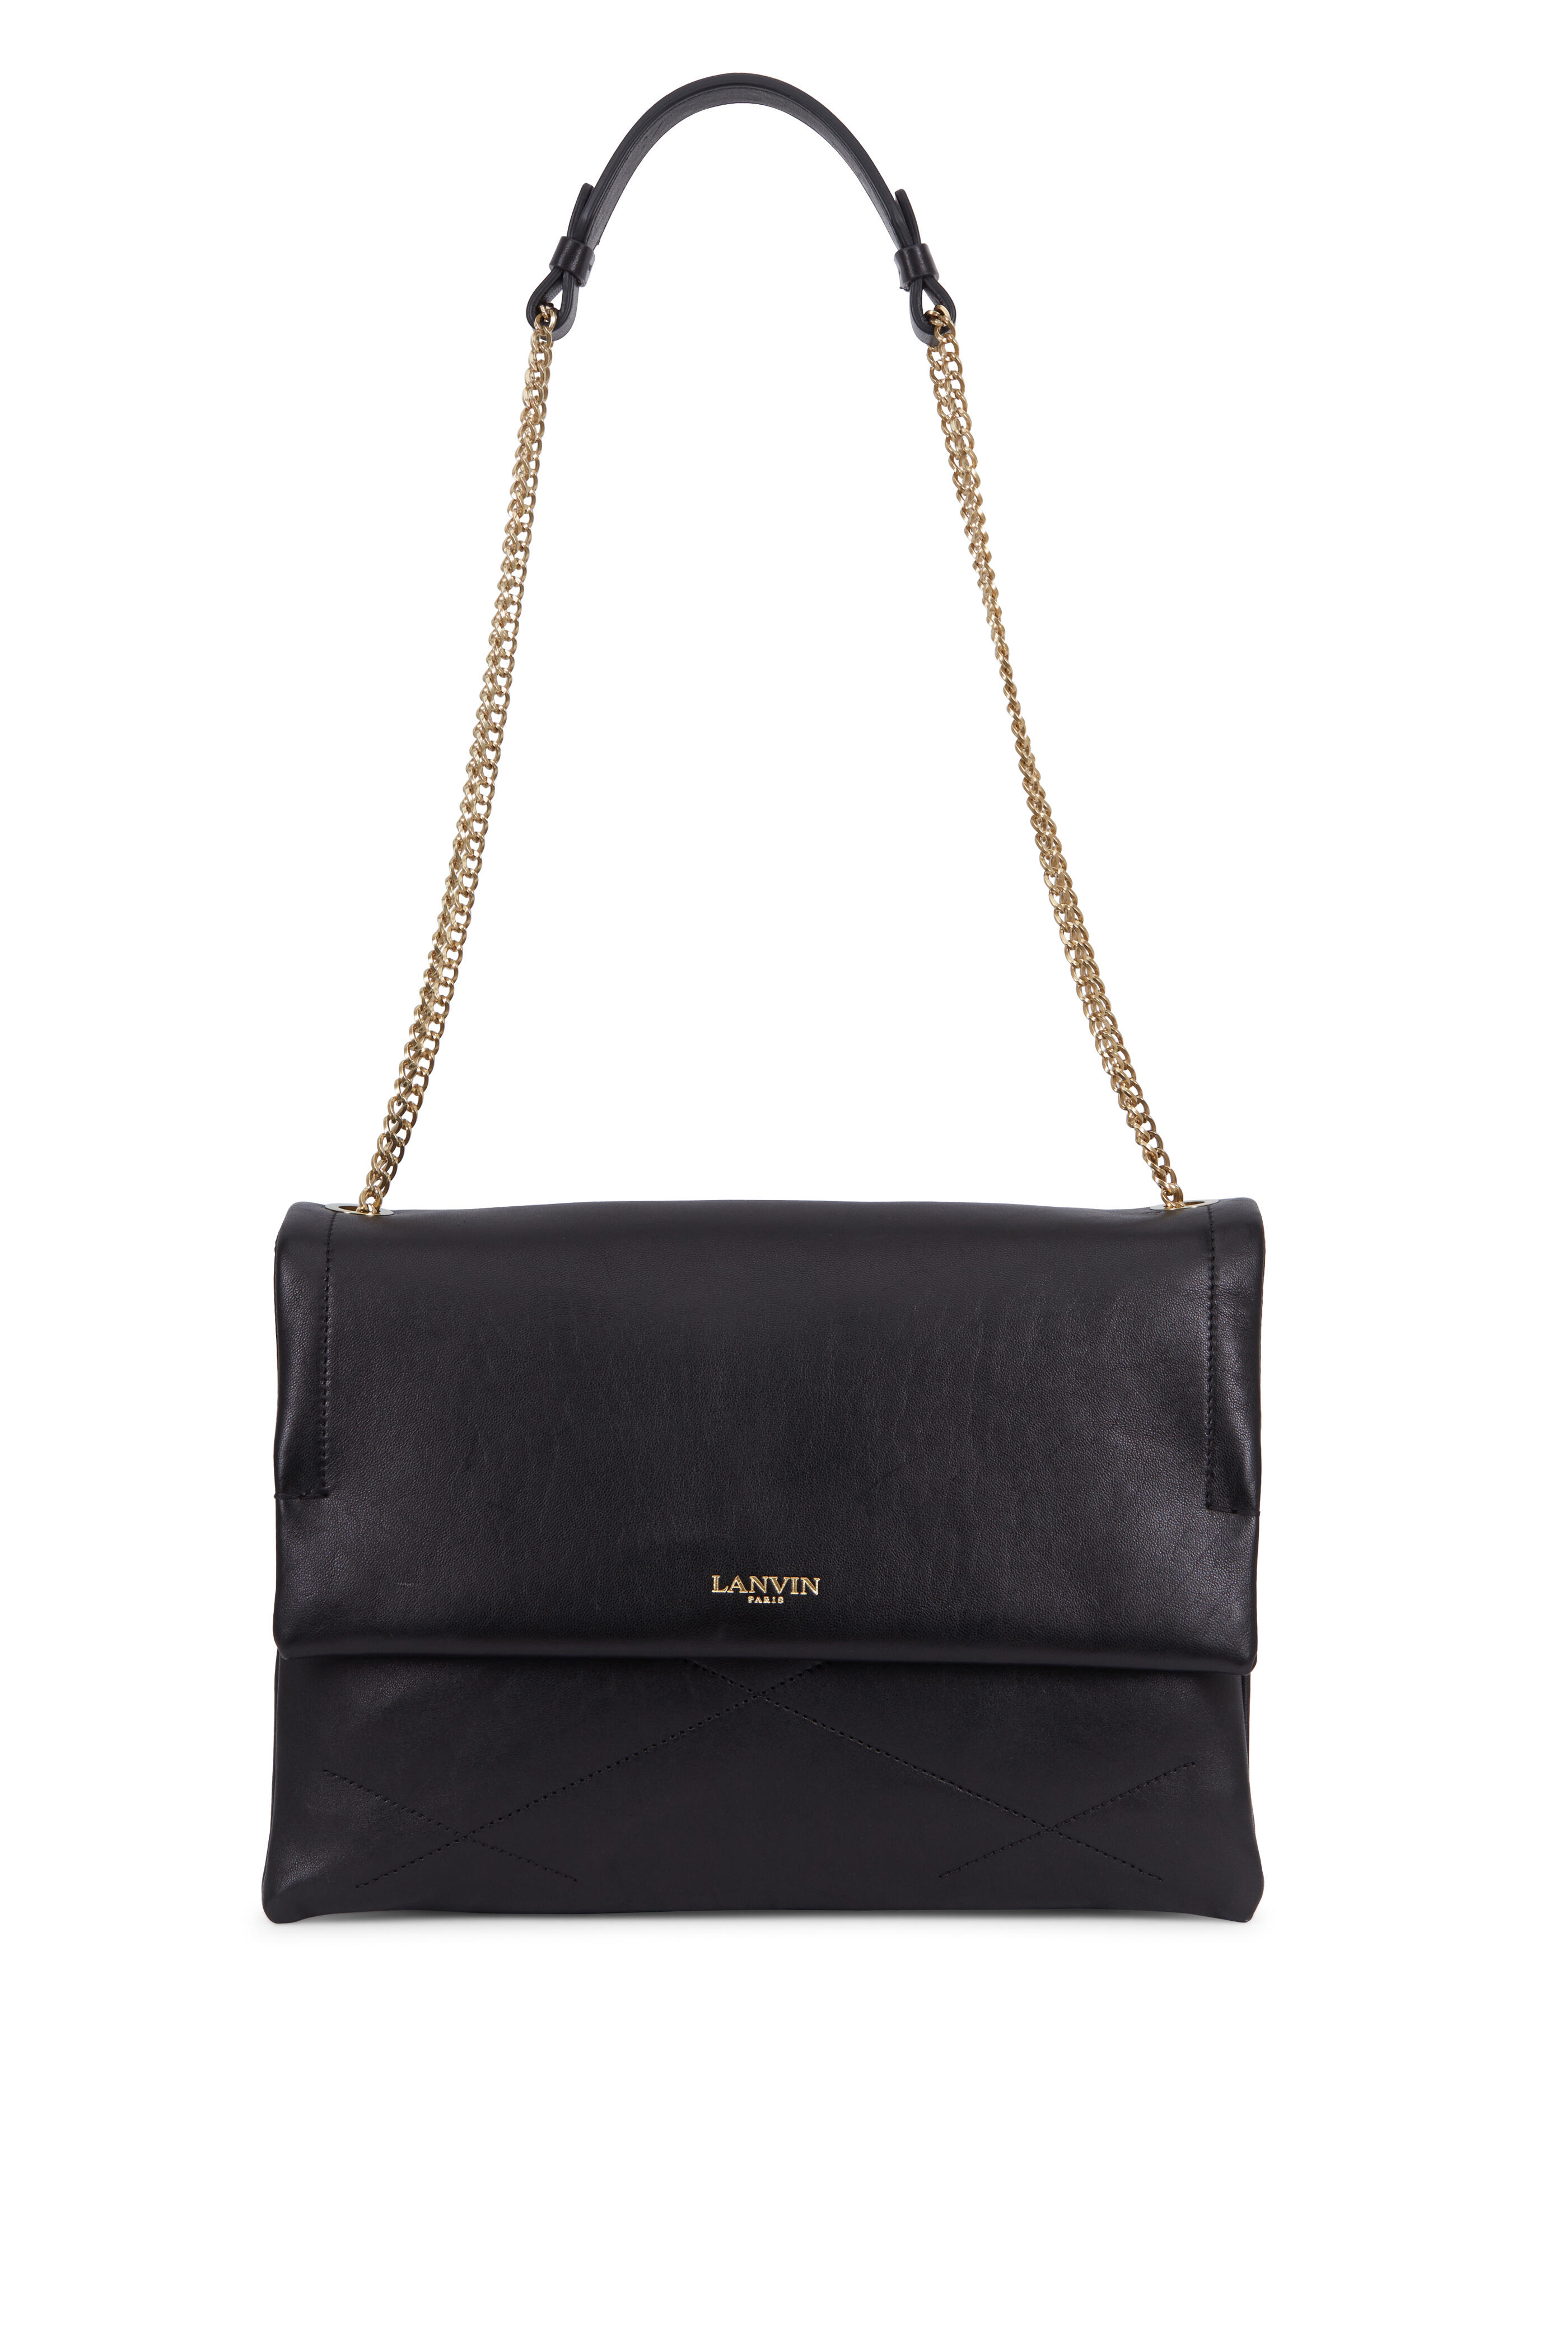 Lanvin - Sugar Black Leather Medium Shoulder Bag